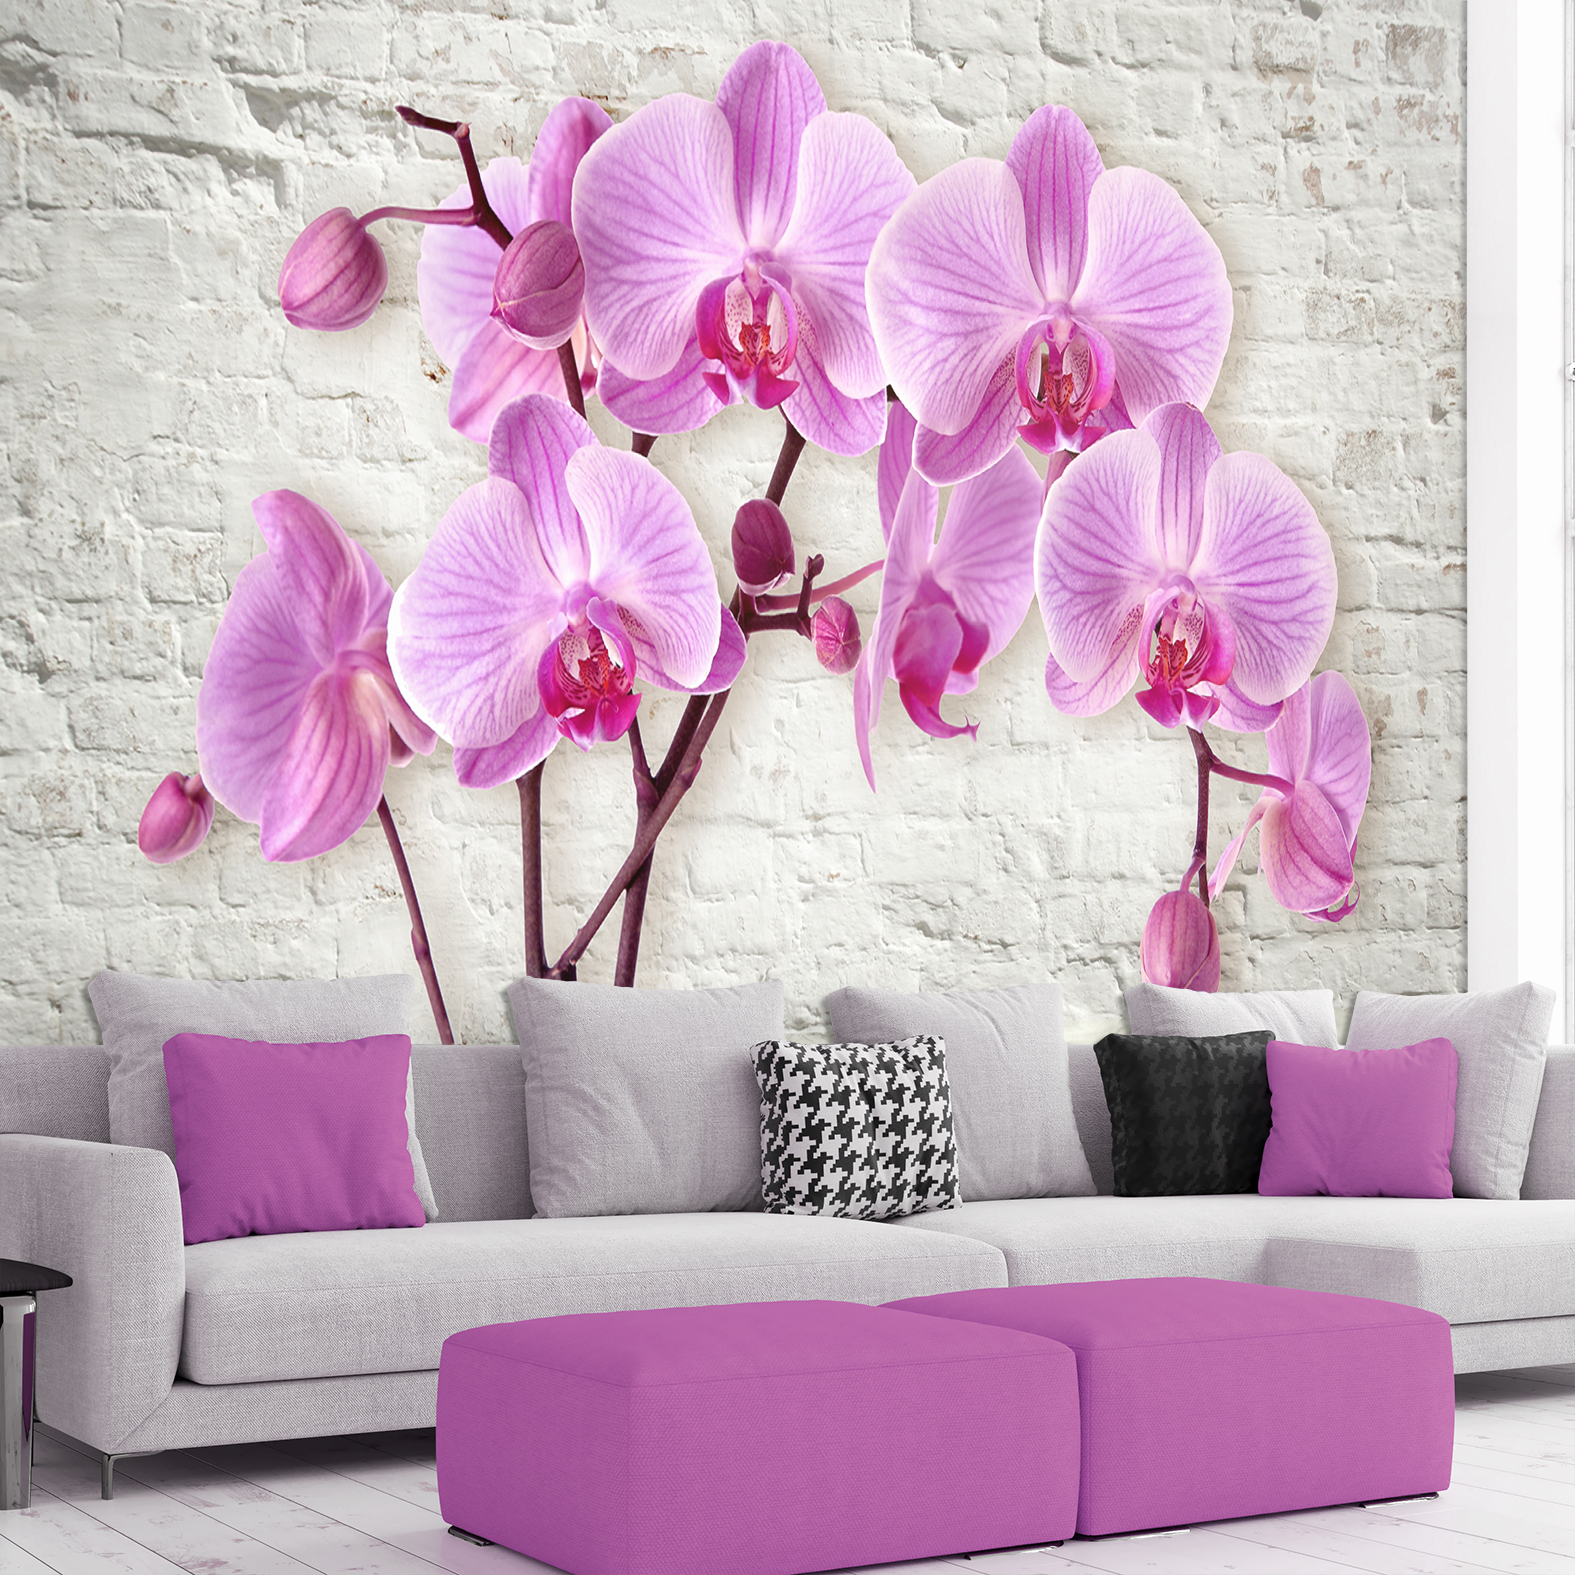 Фотообои Photostena 3D орхидеи на фоне кирпичной стены 4,08 x 2,8 м фотообои photostena 3d арка с ветками орхидеи 1 62 x 2 5 м